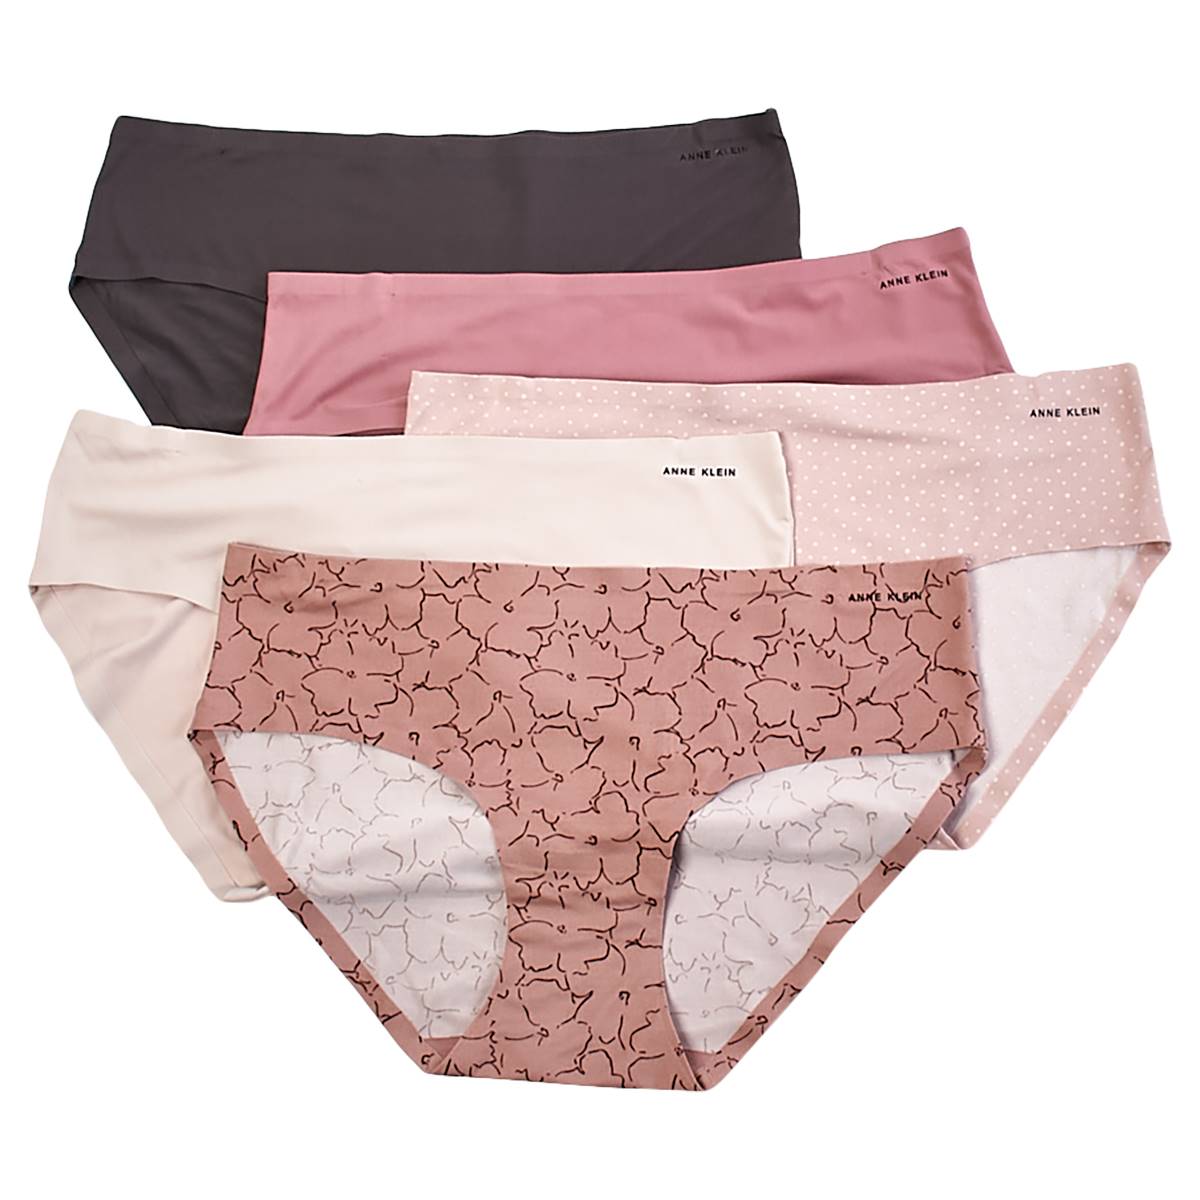 Adrienne Vittadini, Intimates & Sleepwear, Adrienne Vittadini Everyday  Brief Panties 3 Pack